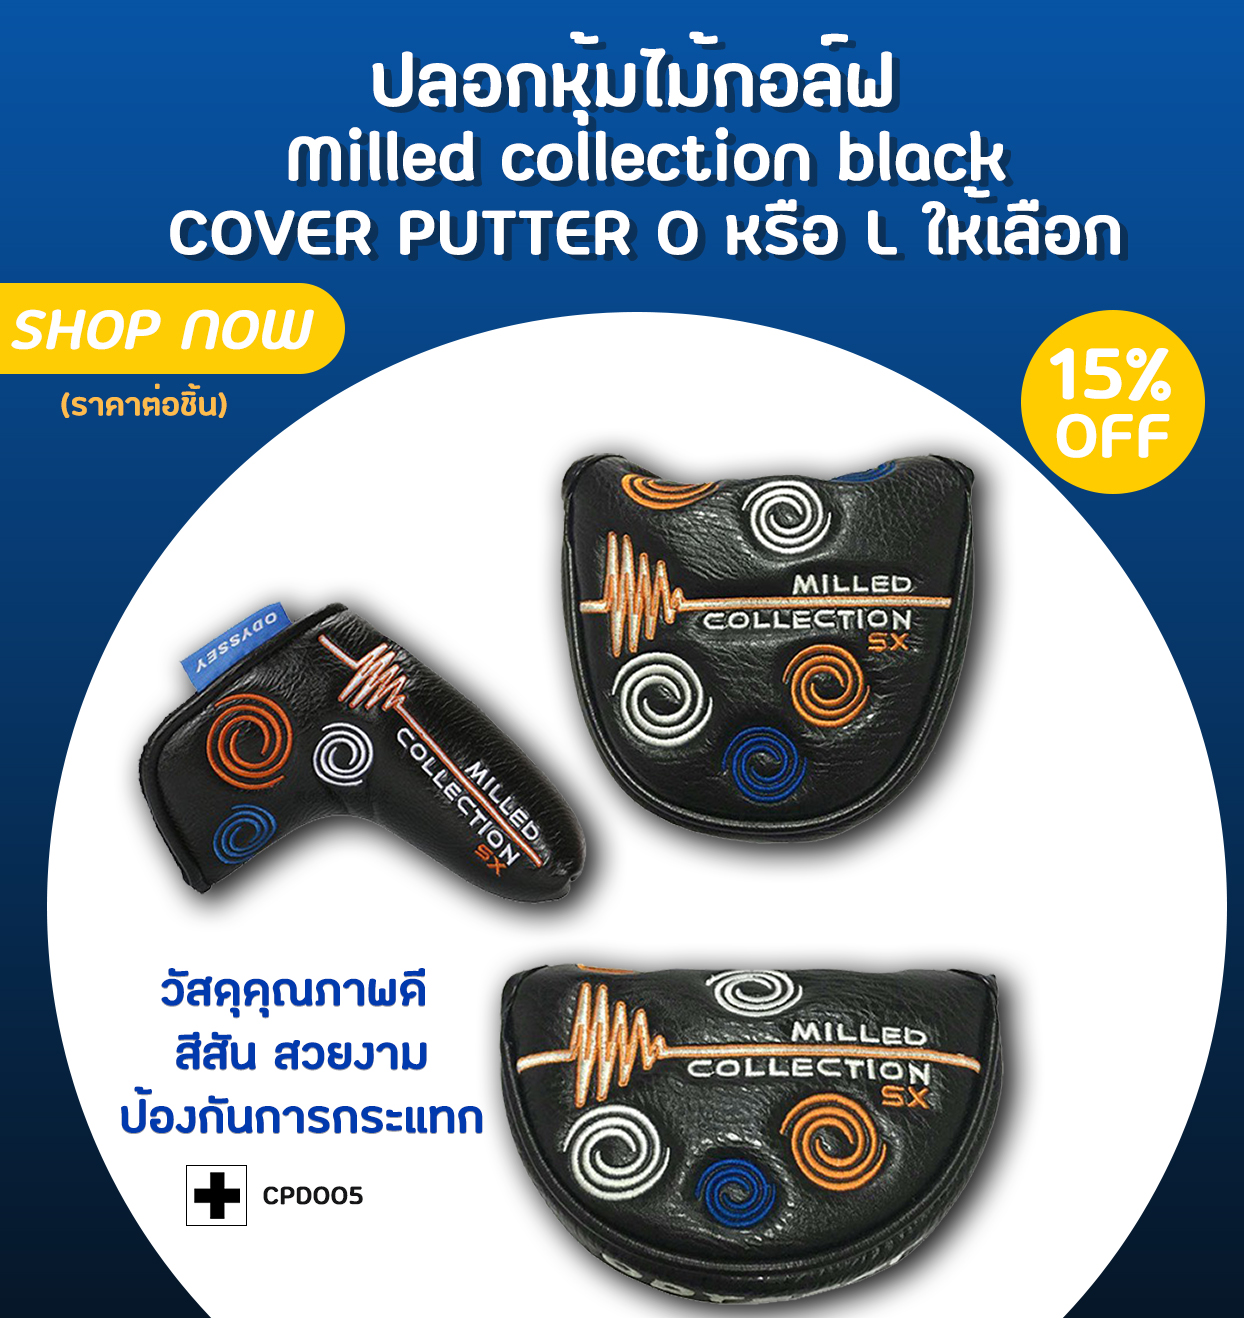 ปลอกหุ้มไม้กอล์ฟ Milled collection black มีทั้ง COVER PUTTER O หรือ L  ให้เลือกในราคาคุณภาพ น่าใช้งาน (CPD005)